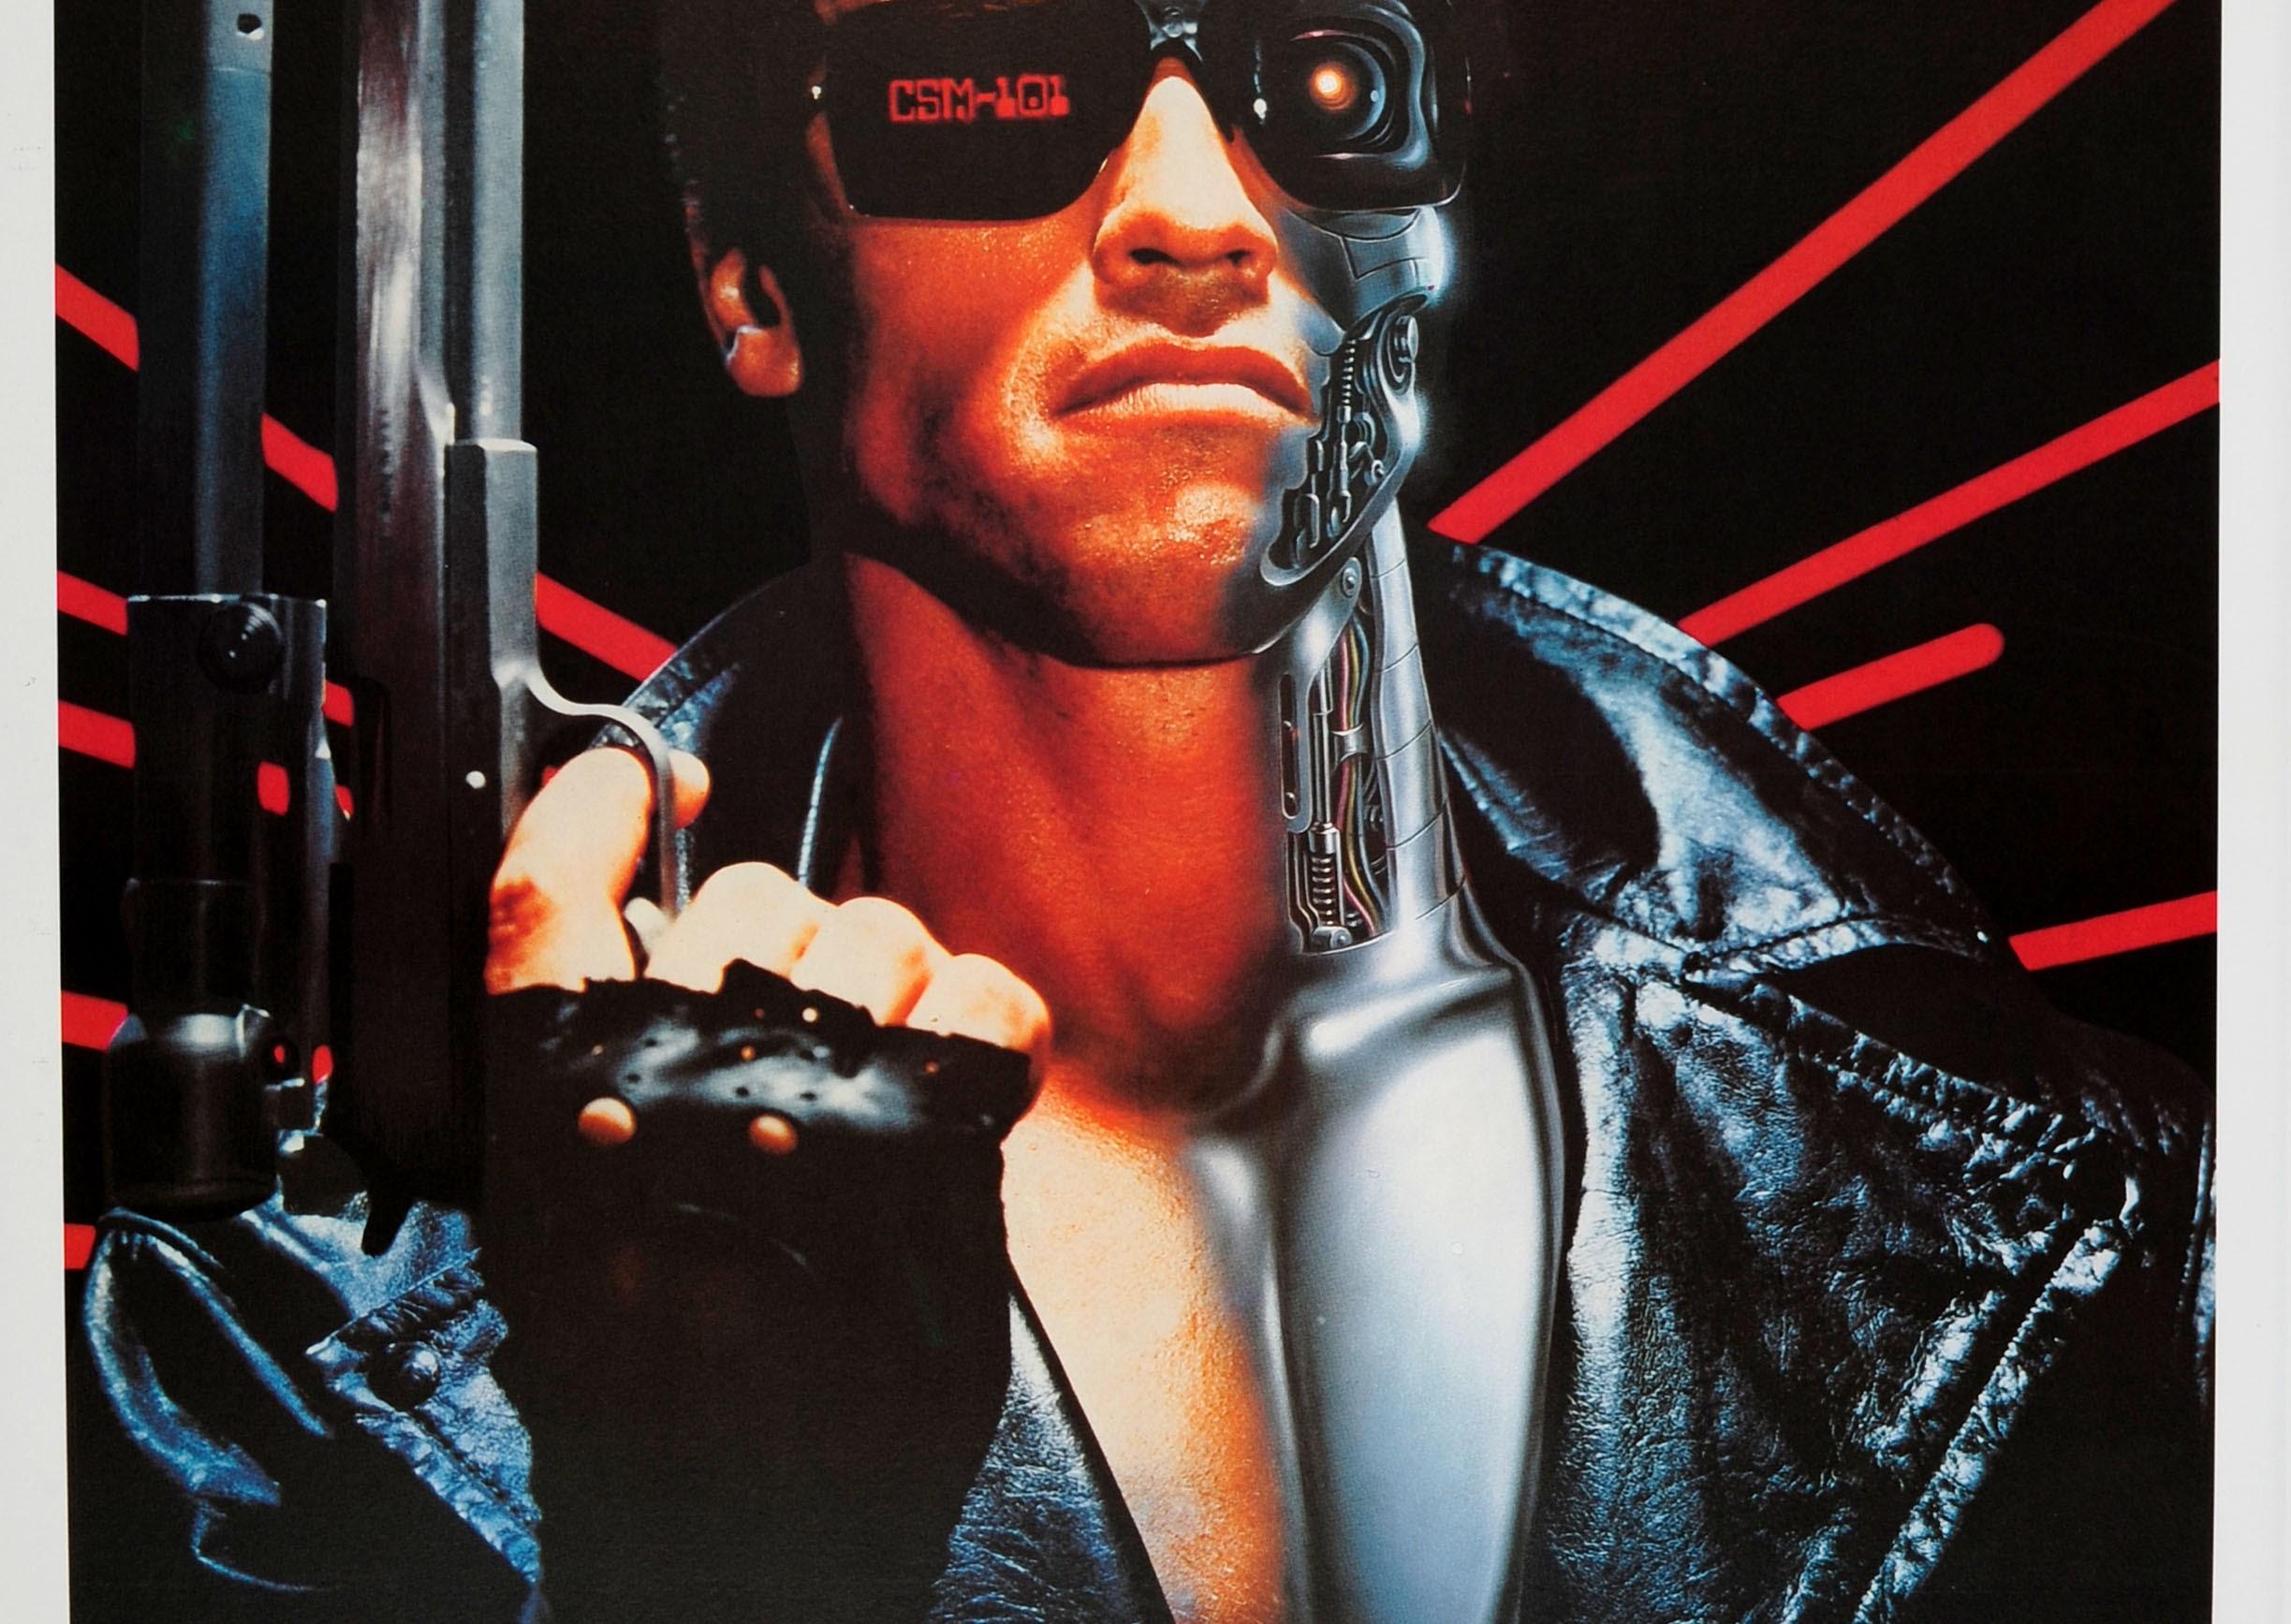 Original-Filmplakat für den italienischen Kinostart 1985 des amerikanischen Science-Fiction-Films The Terminator von 1984 unter der Regie von James Cameron mit Arnold Schwarzenegger in der Hauptrolle, Michael Biehn, Linda Hamilton als Sarah Connor